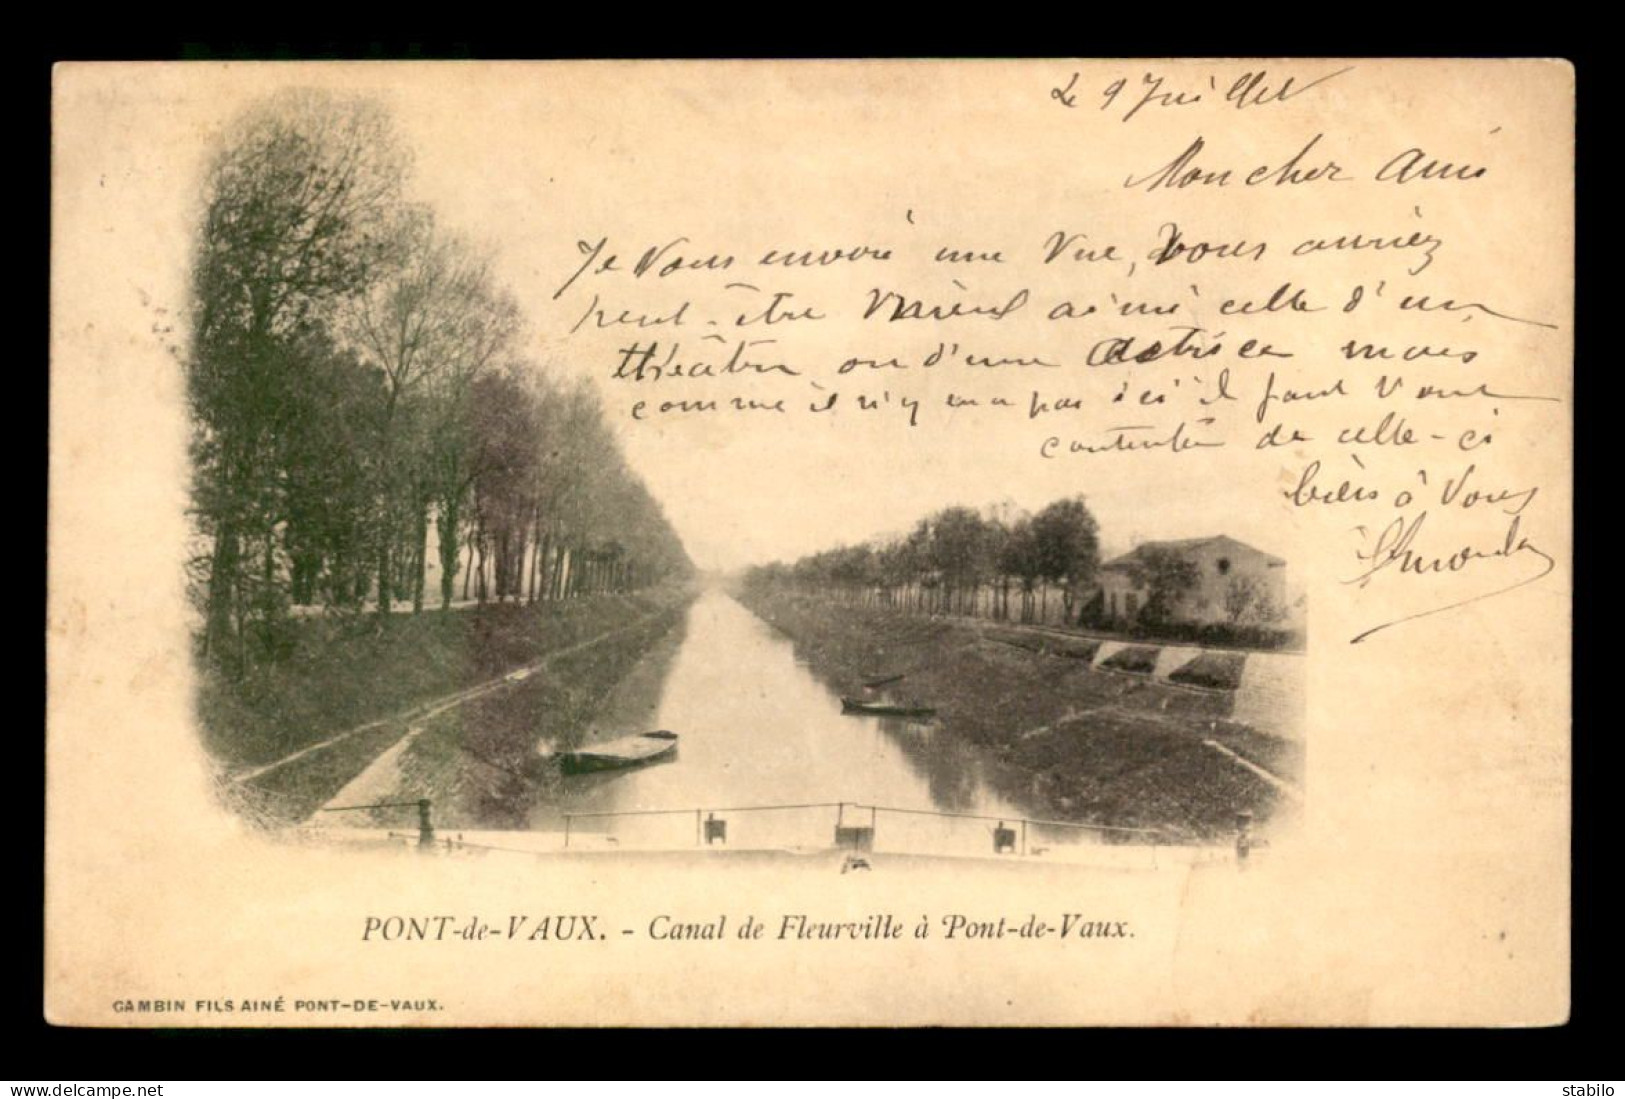 01 - PONT-DE-VAUX - CANAL DE FLEURVILLE - Pont-de-Vaux